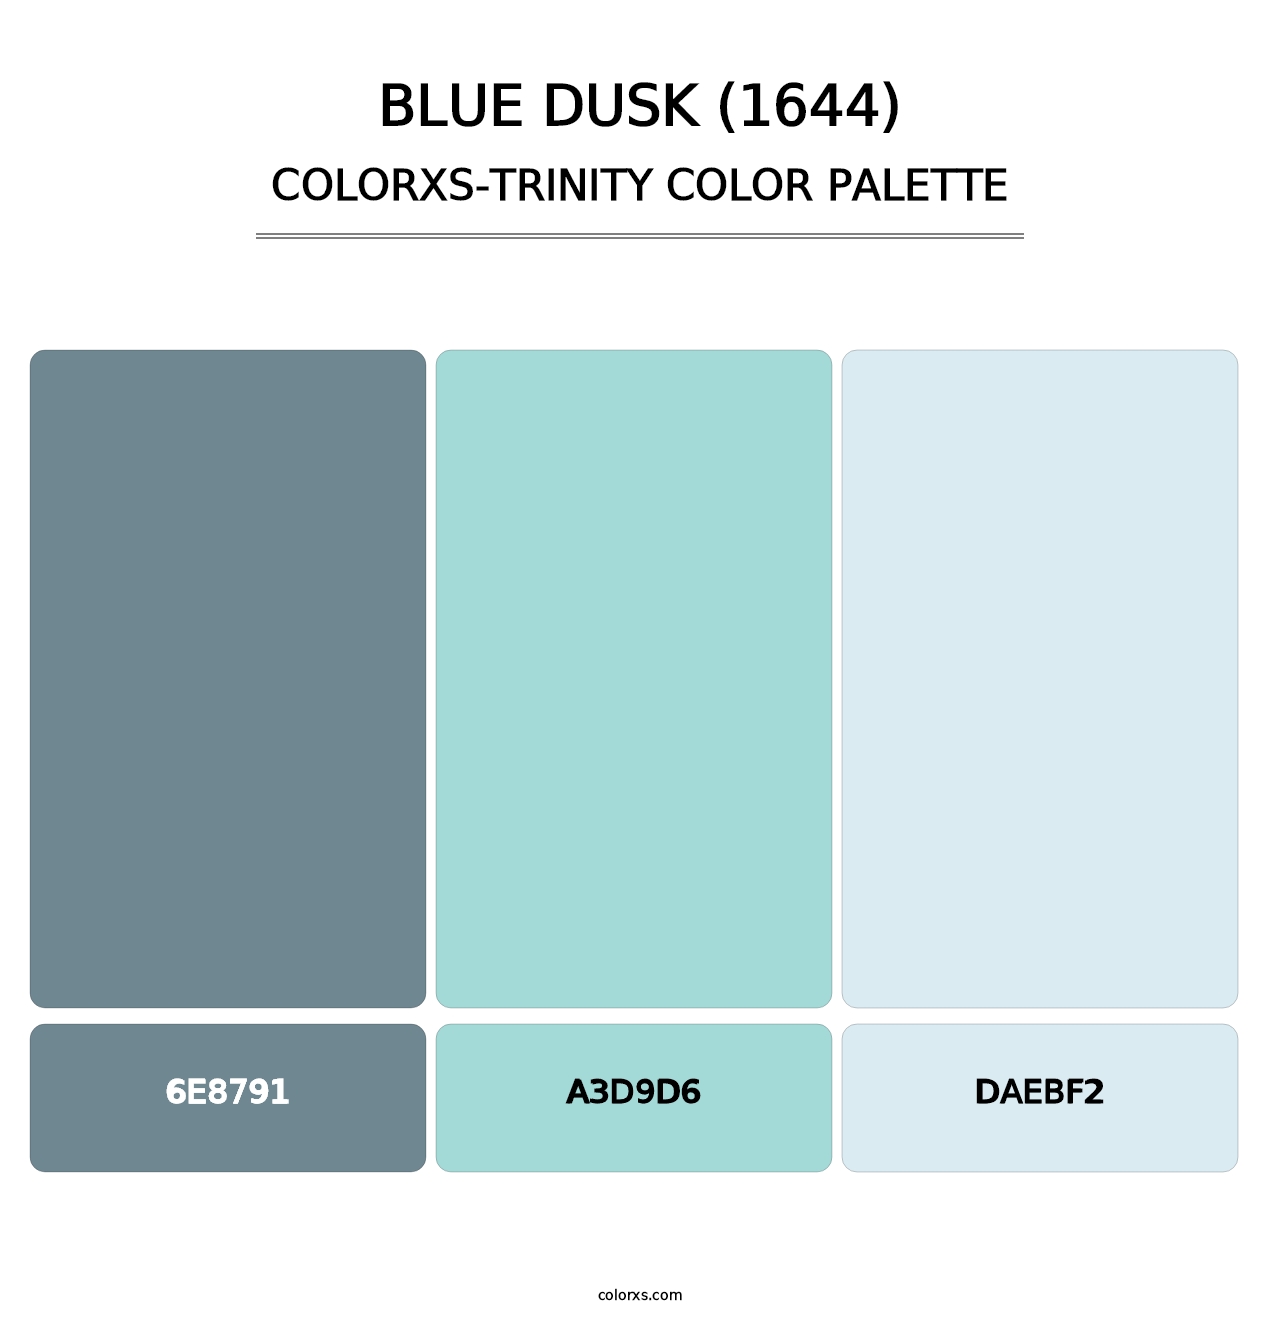 Blue Dusk (1644) - Colorxs Trinity Palette